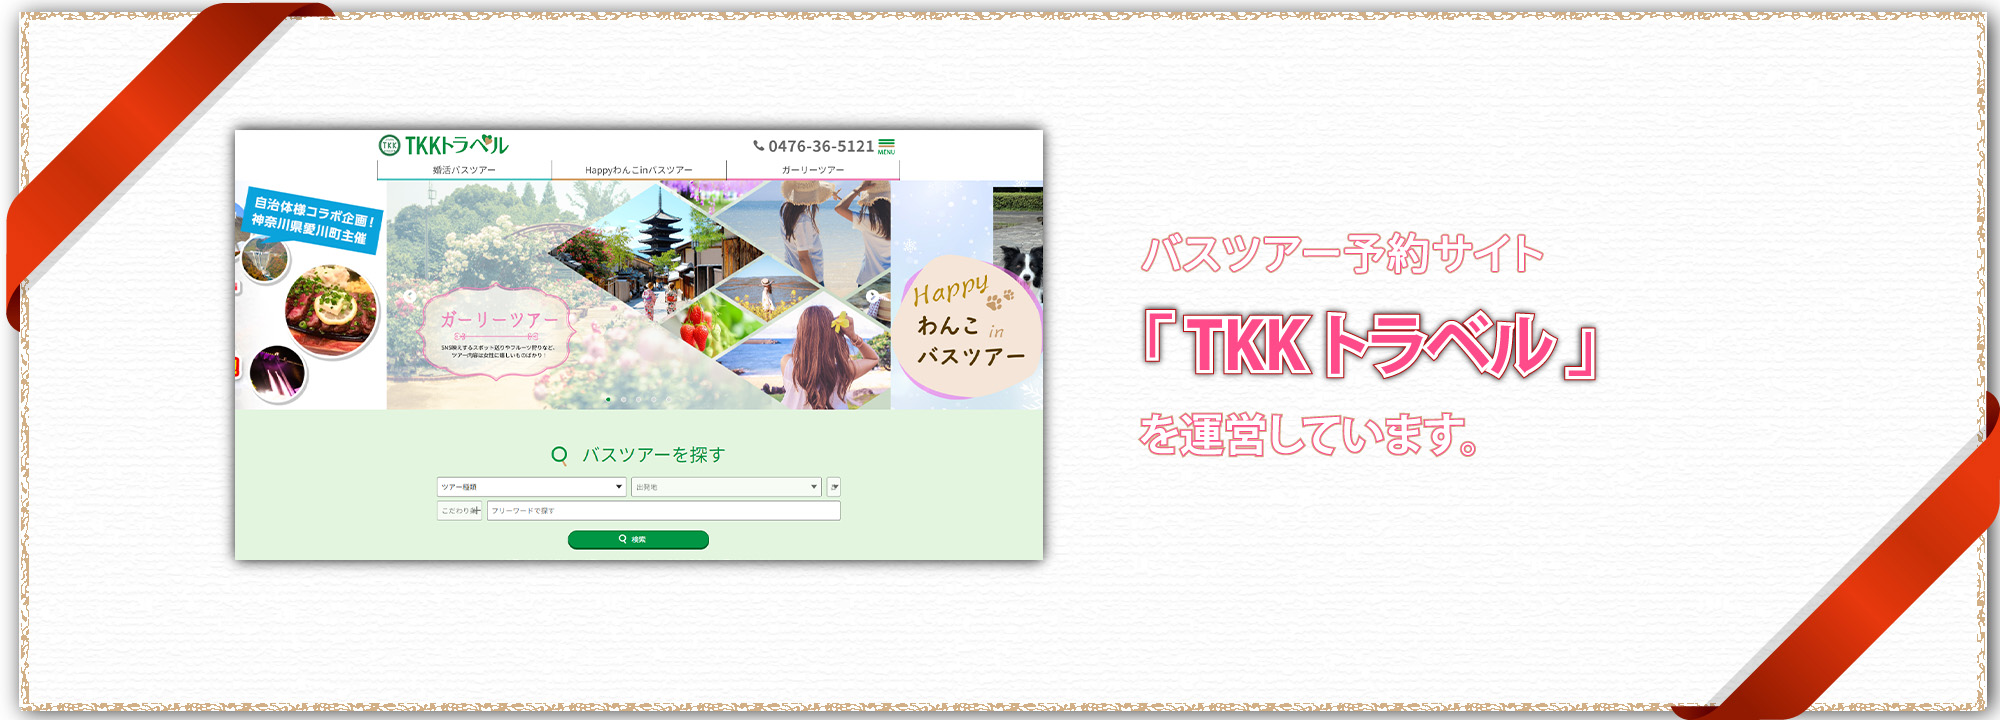 婚活・恋活バスツアー専門サイト「TKK TRAVEL」を運営しています。